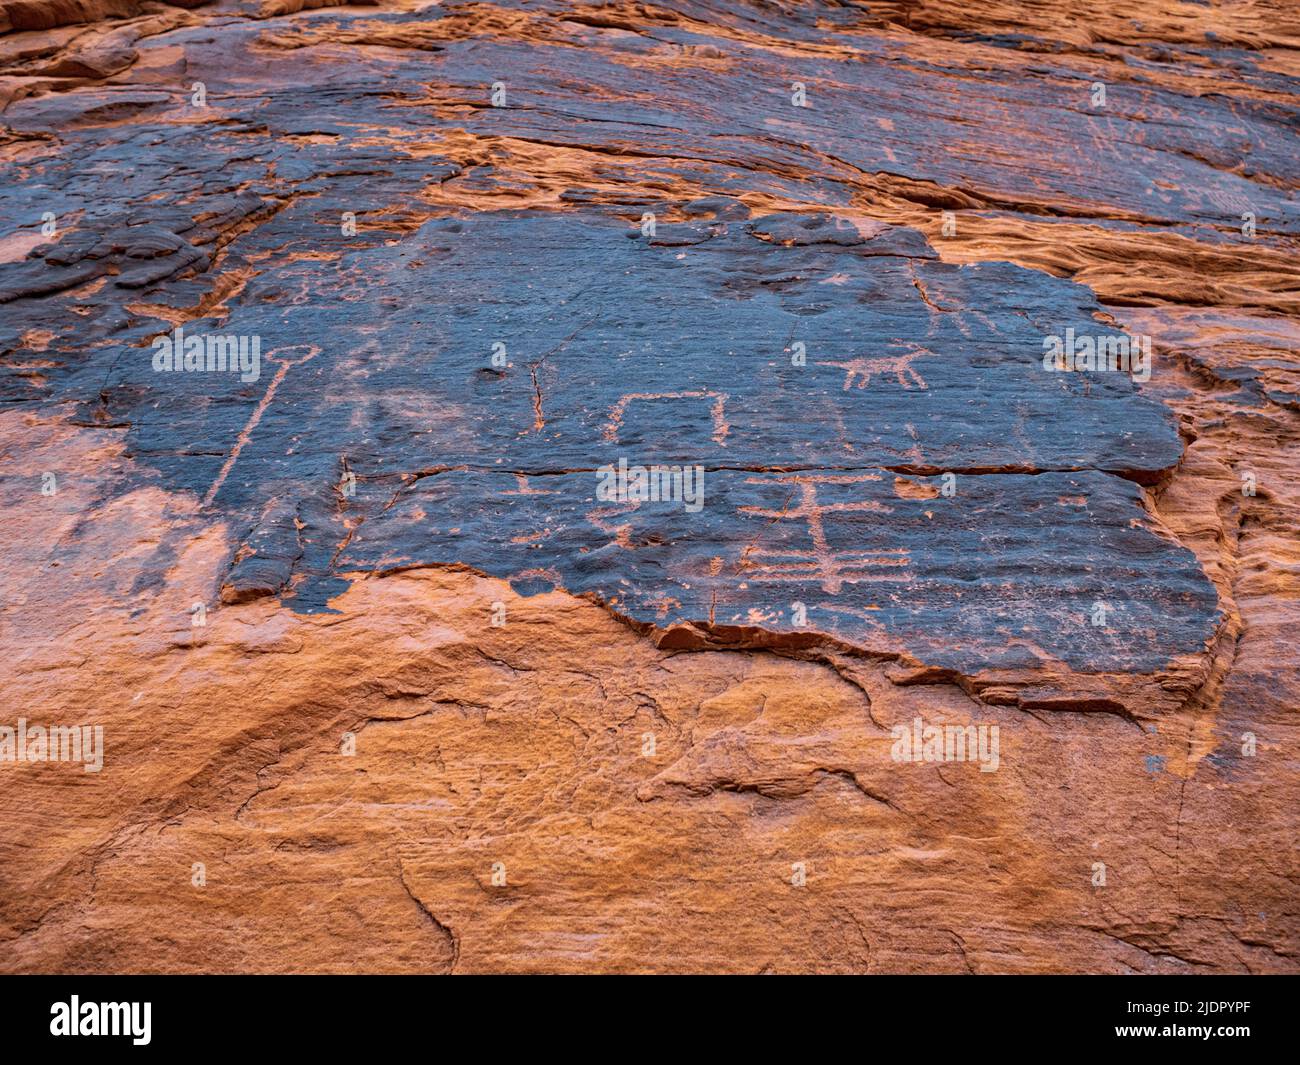 Gros plan de pétroglyphes sculptés à travers le vernis du désert, de sorte que la roche rouge du grès aztèque brille à travers la vallée de Petroglyph Canyon de Fire Nevada Banque D'Images